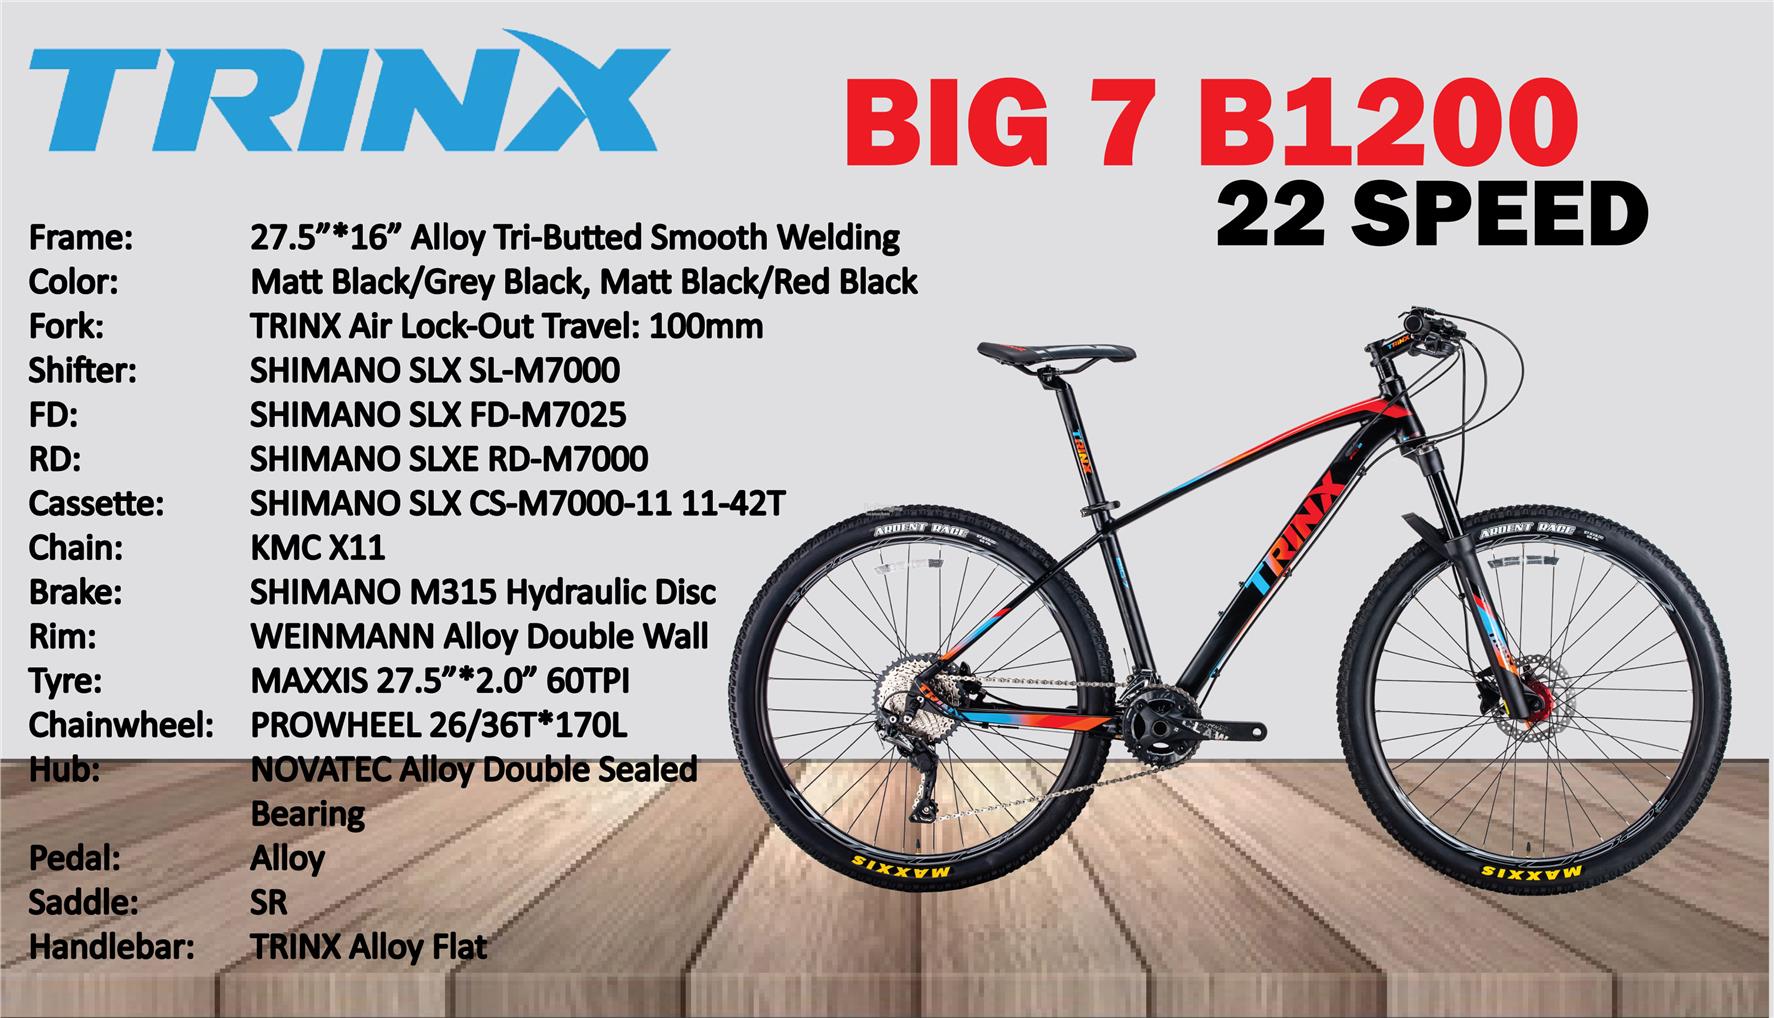 trinx big 7 b1000 price